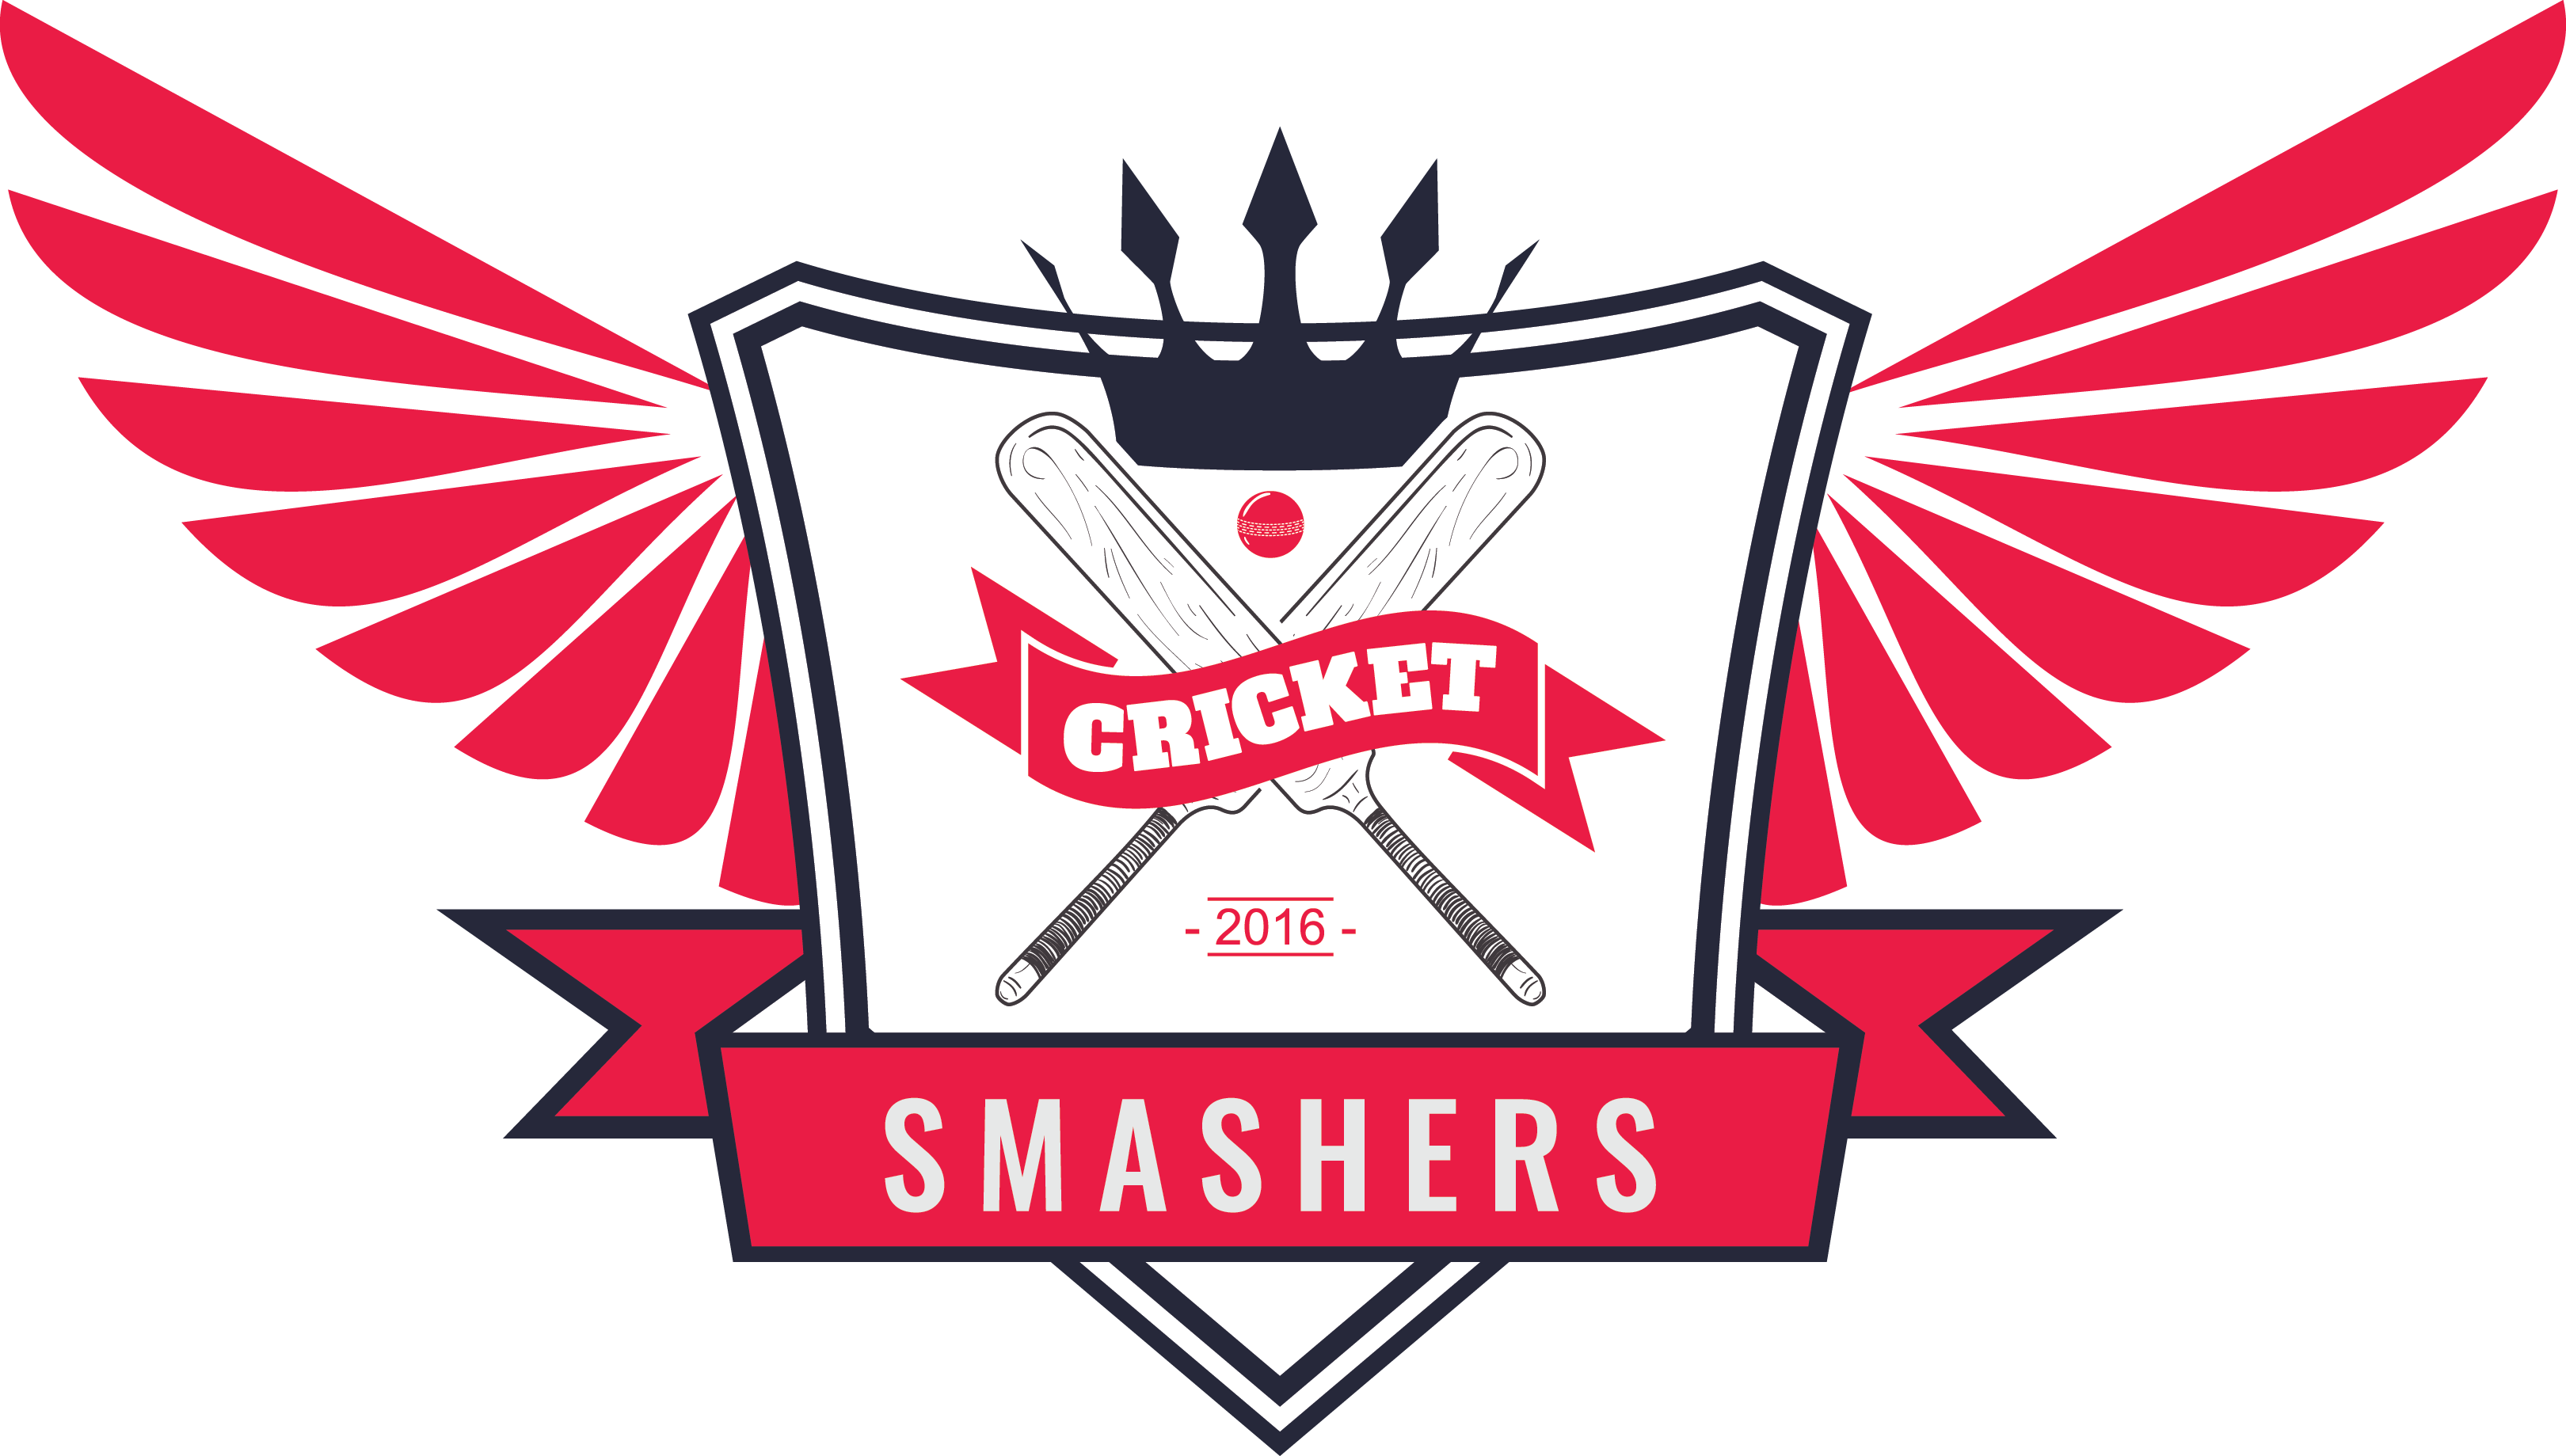 Smashers Logo - NYBCL Bangladesh Cricker League. Second Largest Cricket